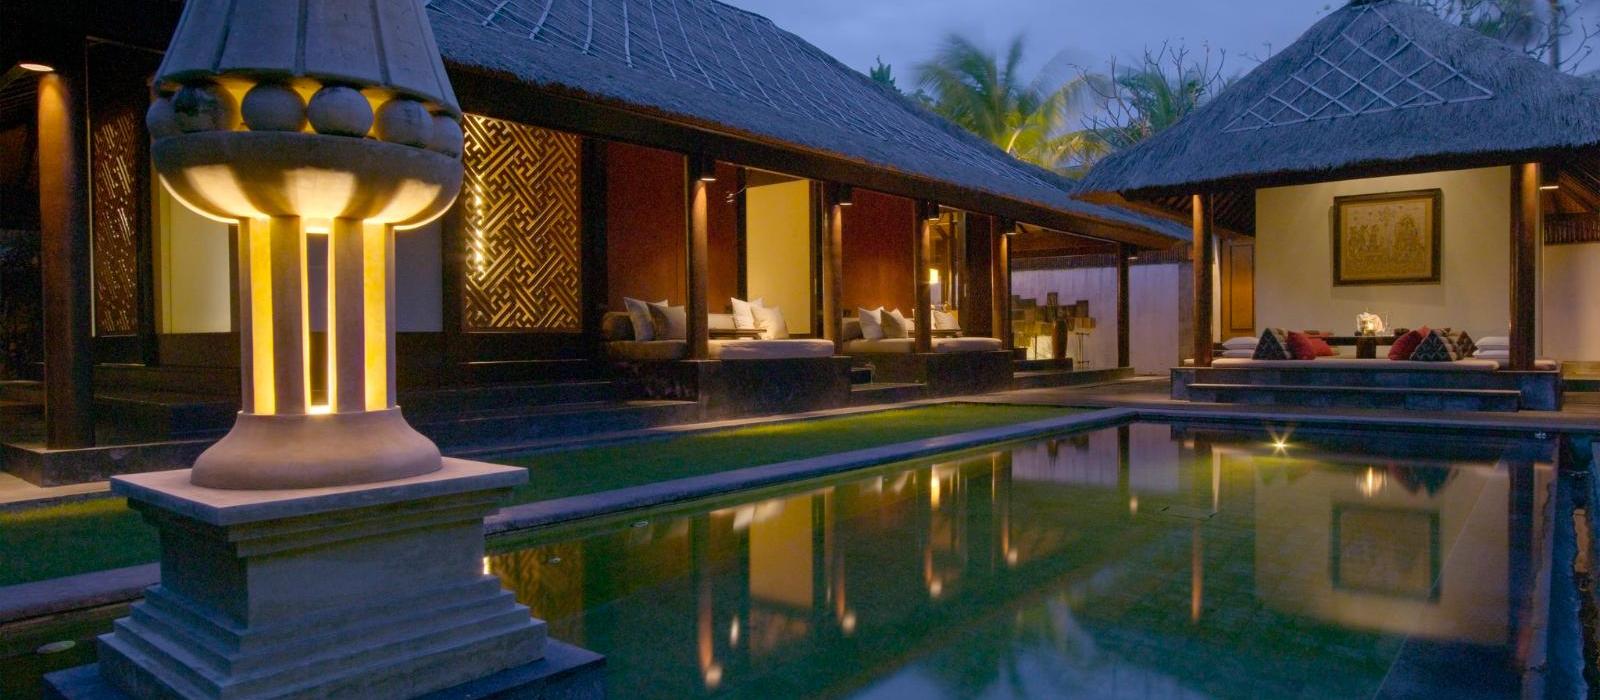 巴厘岛水明漾乐吉安度假酒店(The Legian Seminyak, Bali) 图片  www.lhw.cn